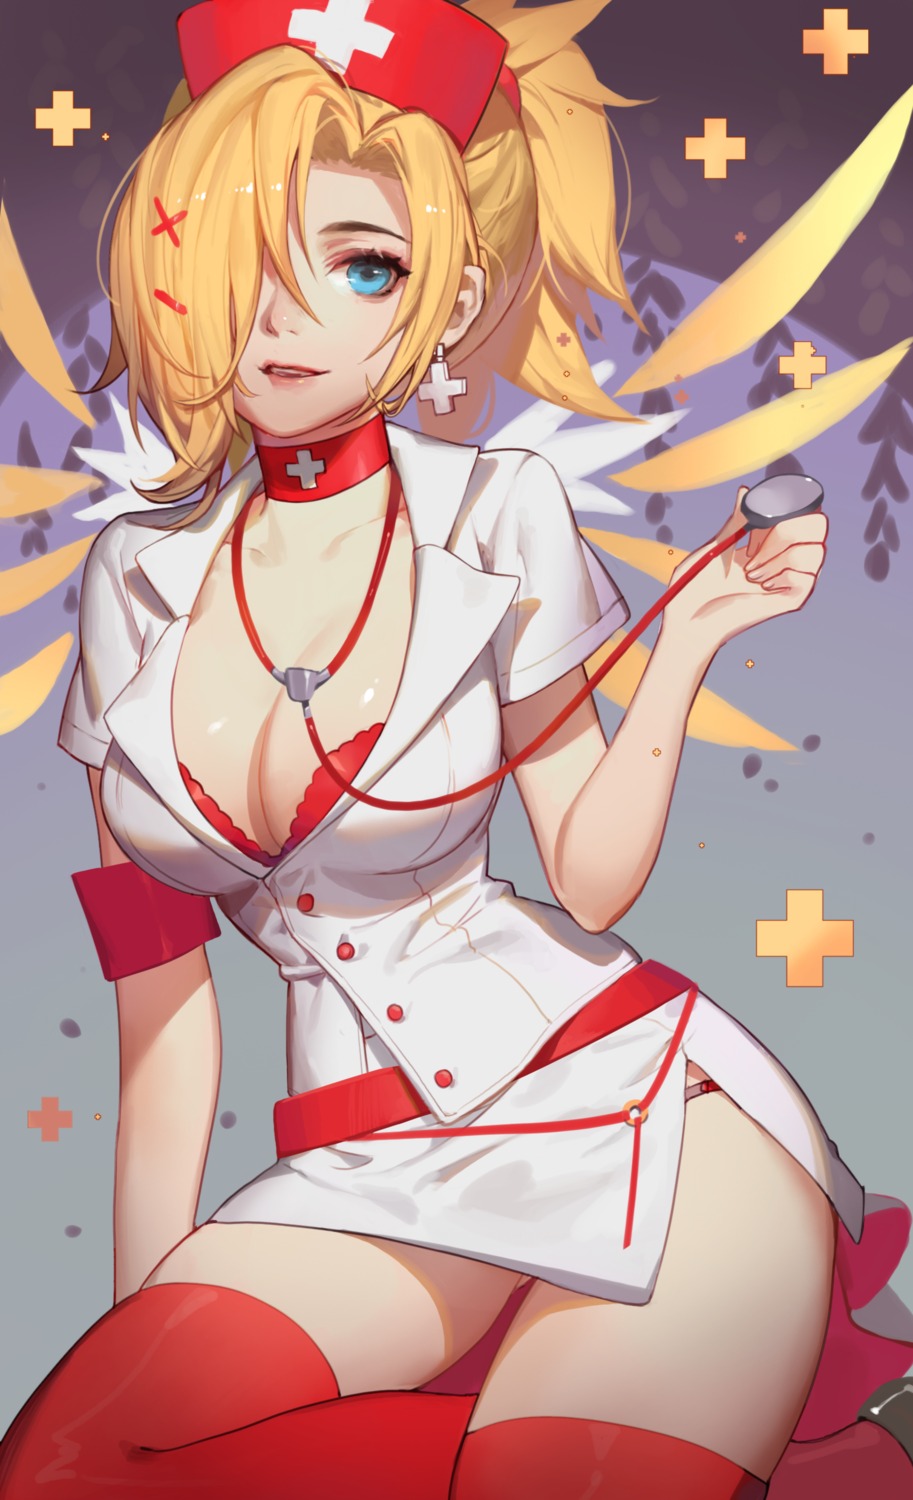 bra cleavage mercy_(overwatch) nurse open_shirt overwatch pantsu songjikyo thighhighs wings